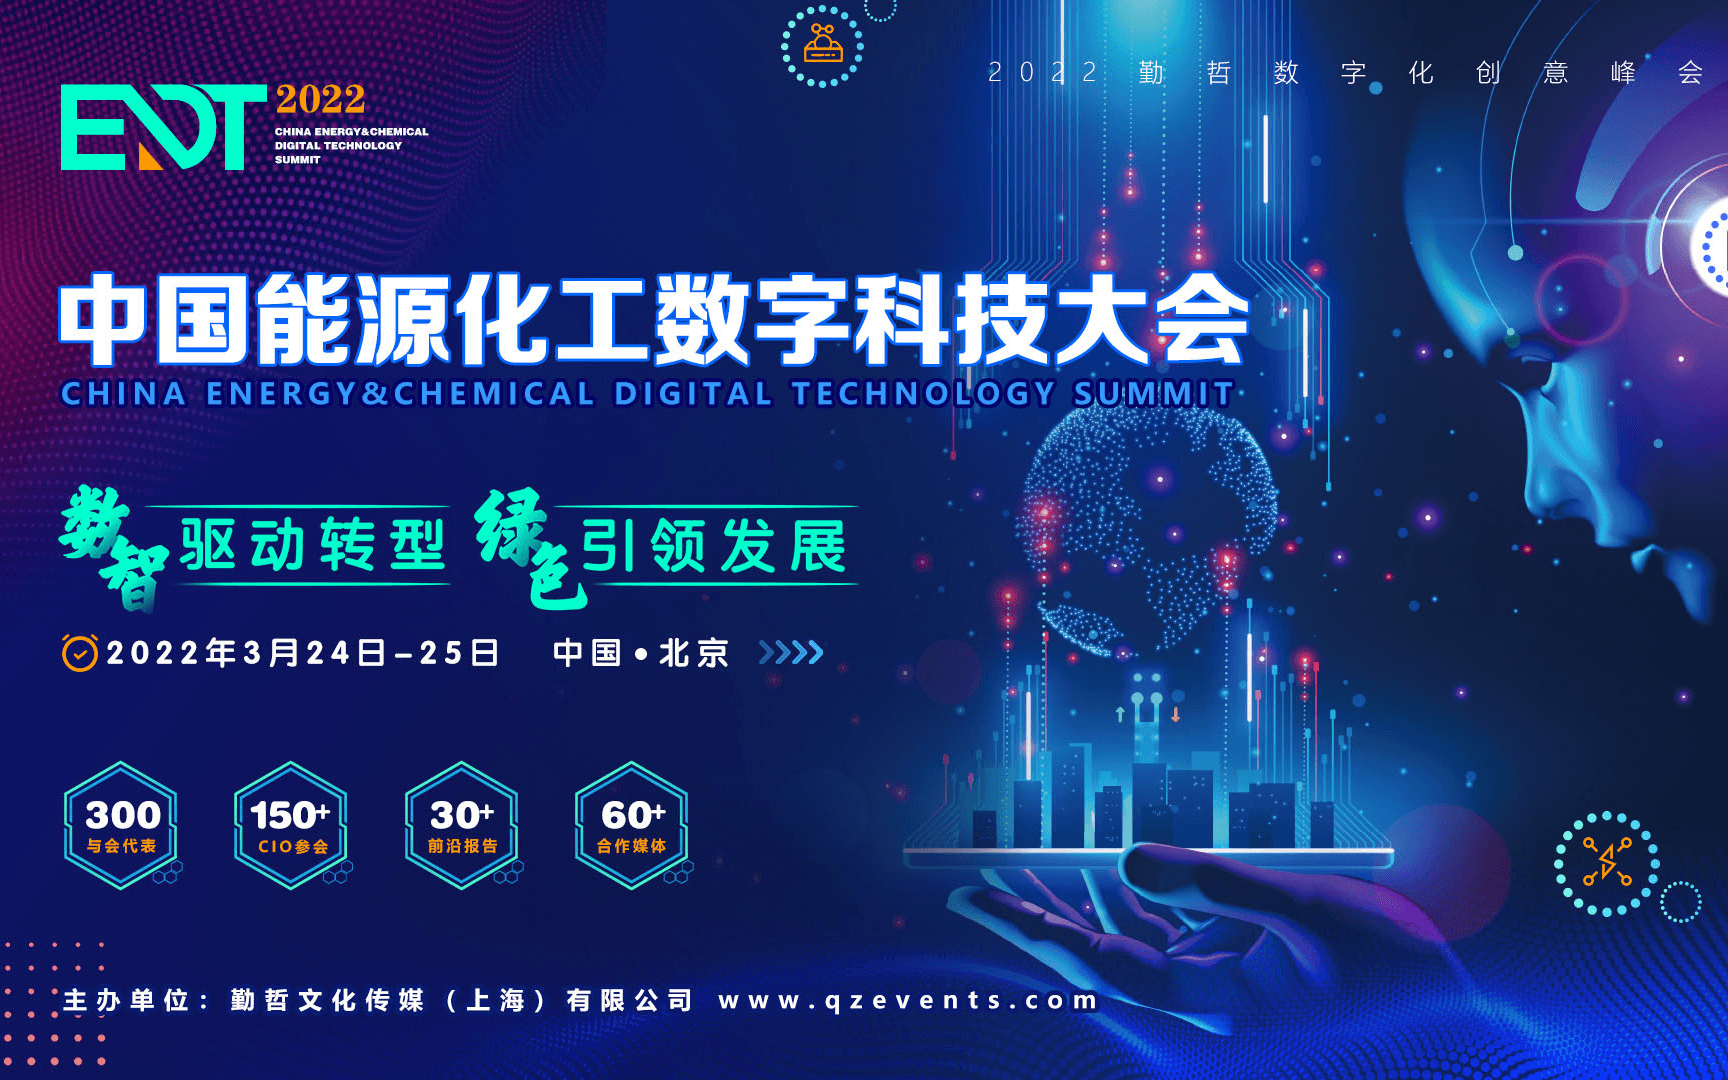 EDT 2022中国能源化工数字科技大会